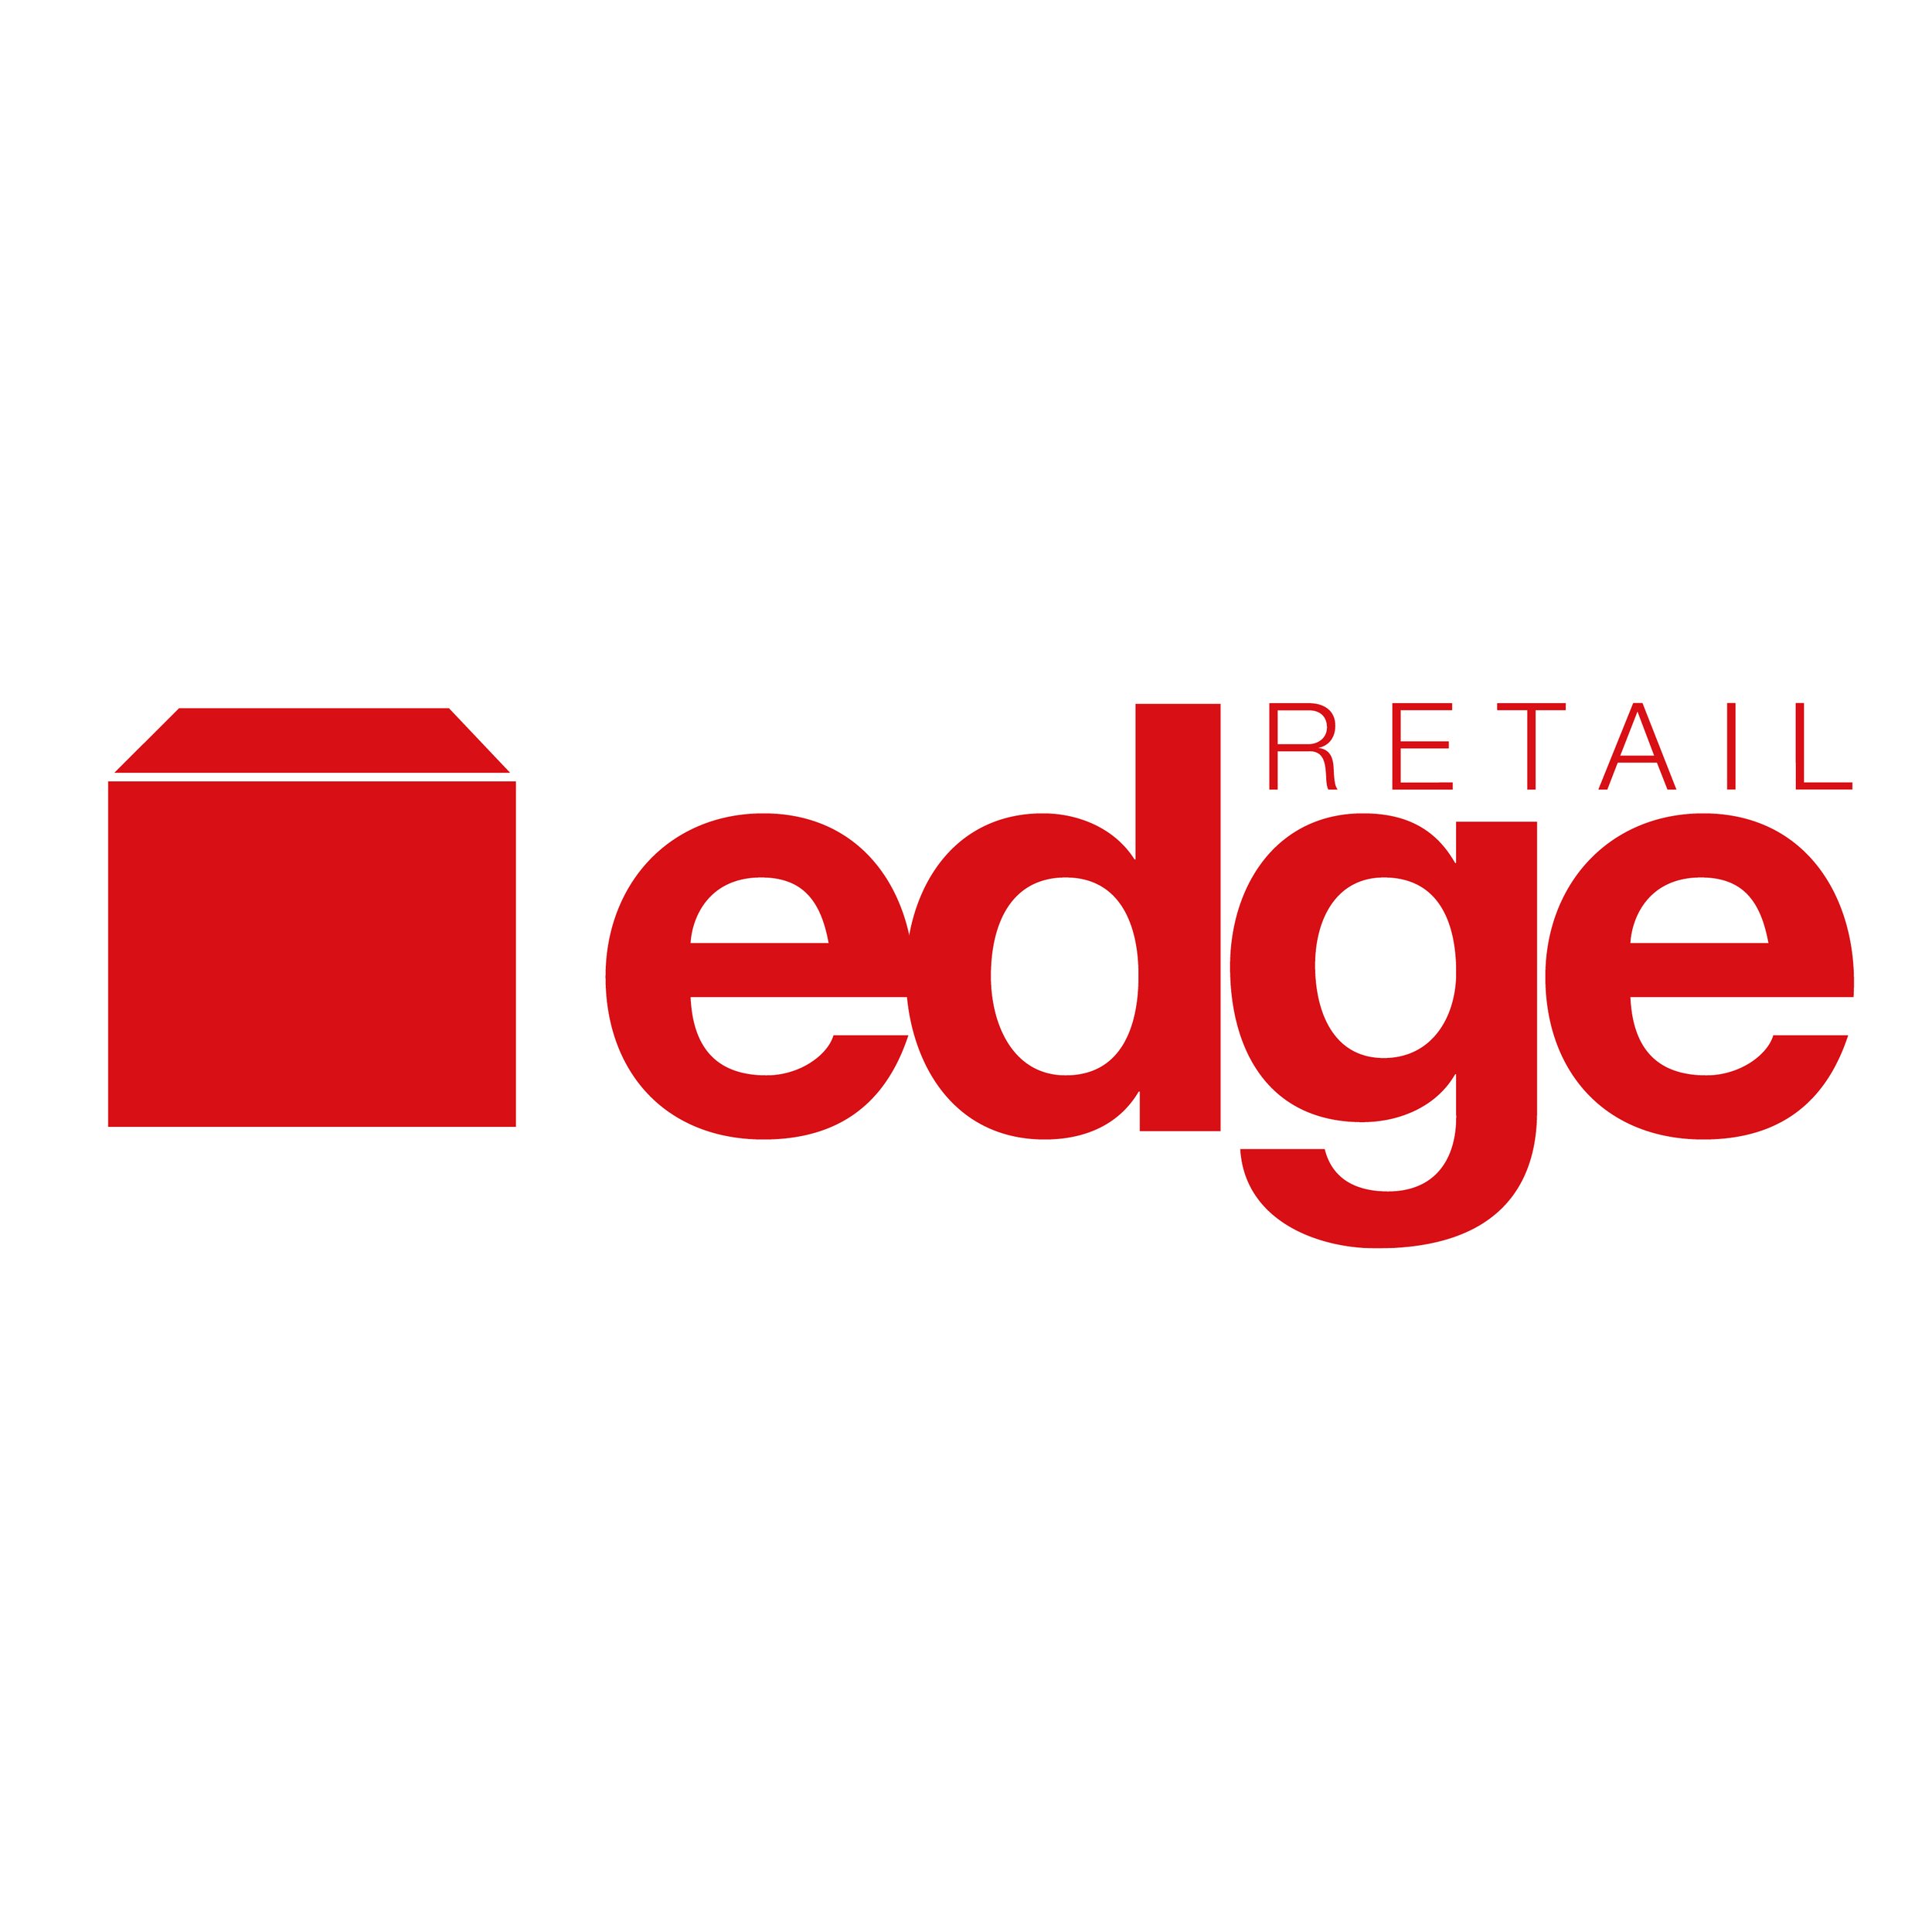 Edge Retail